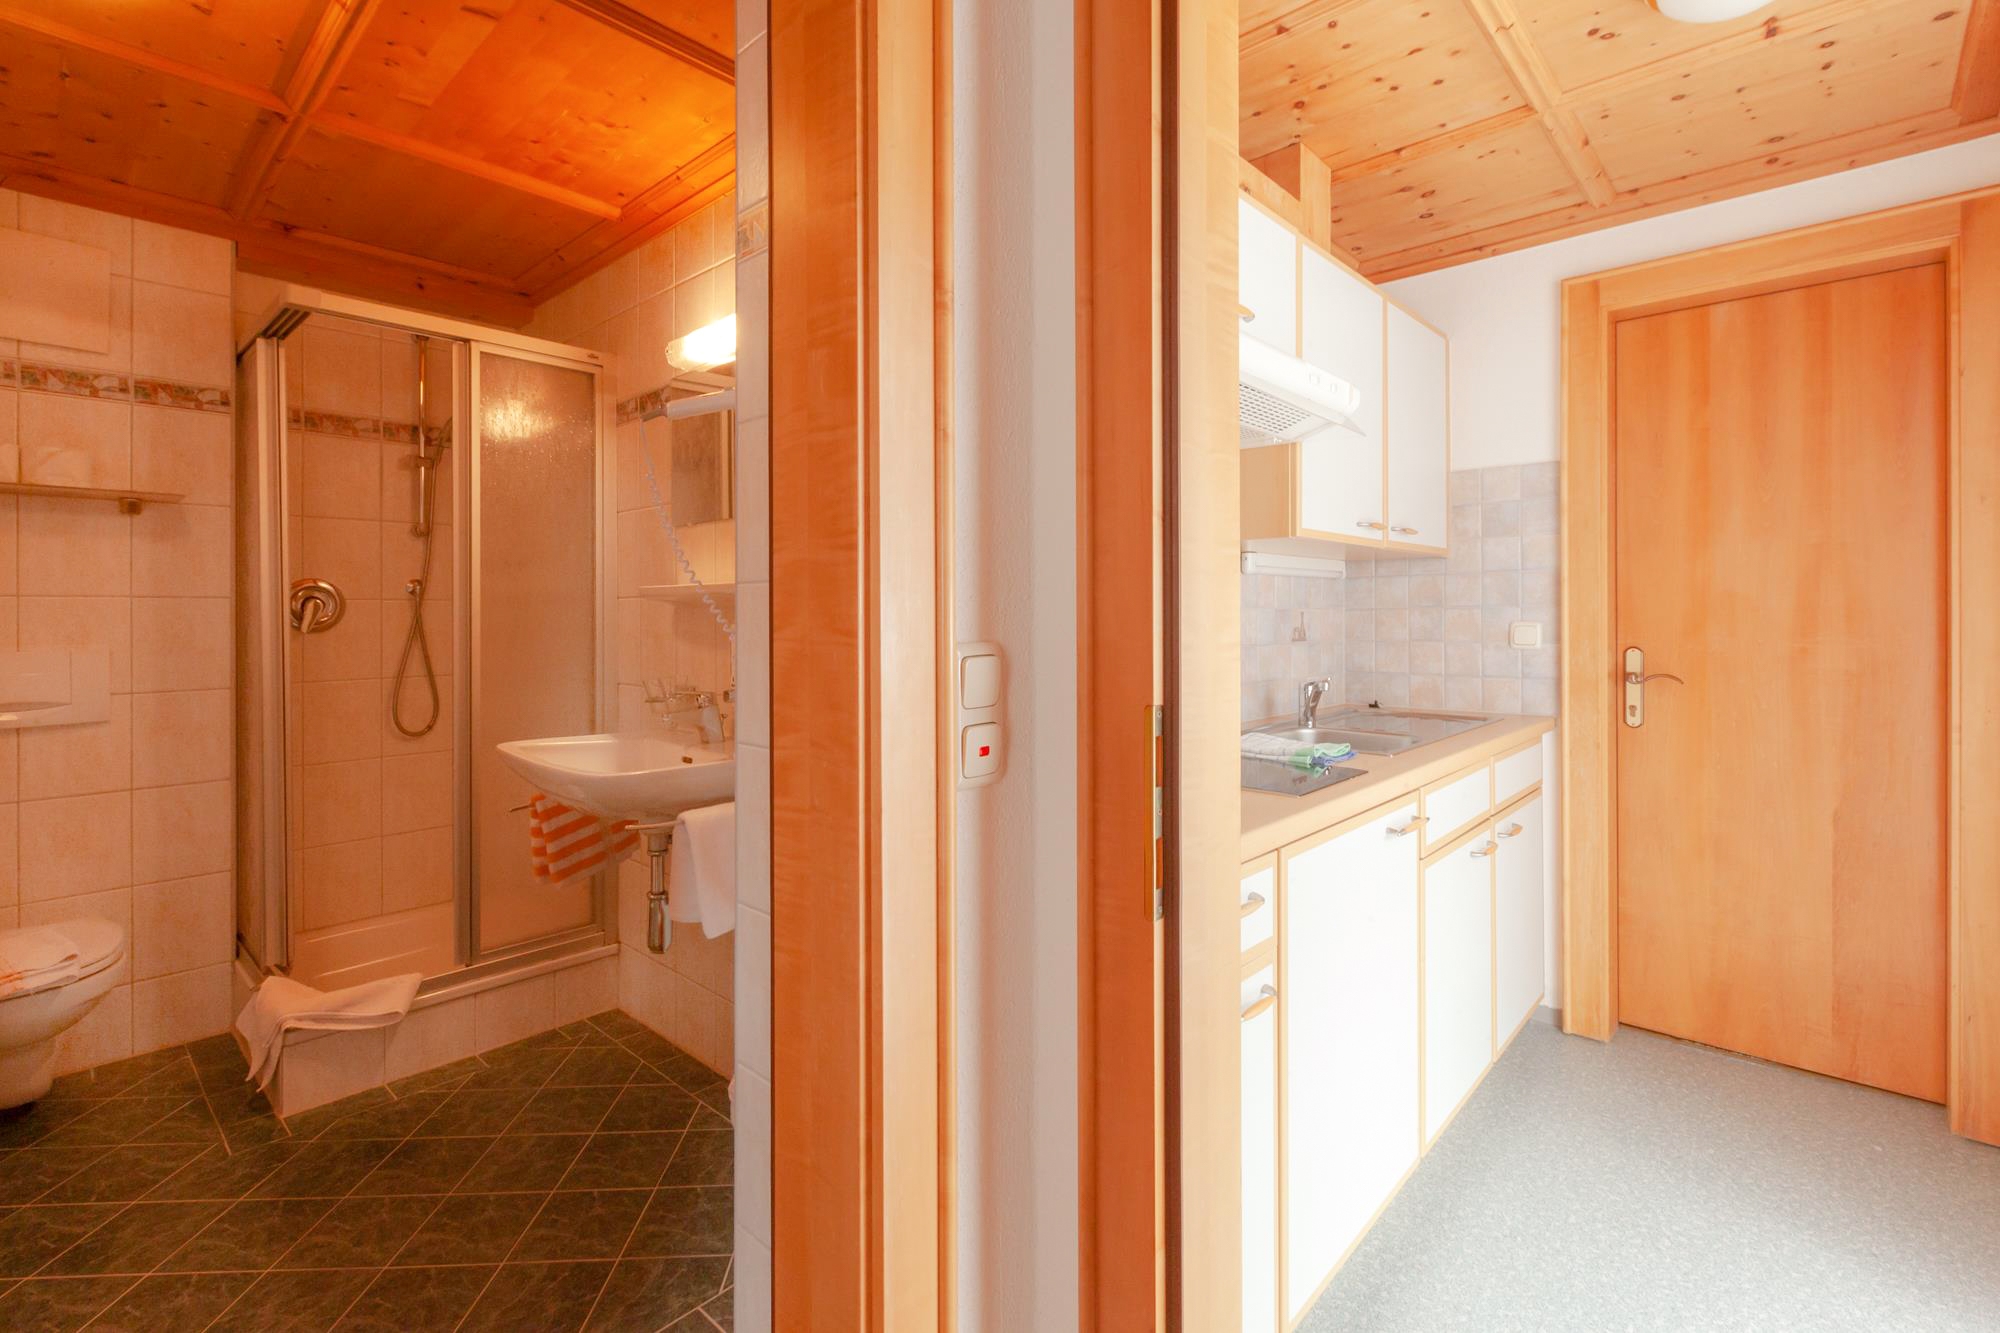 Edelweißhof Appartements: 2 Doppelzimmer für 4 Personen - Bad und Küchenzeile